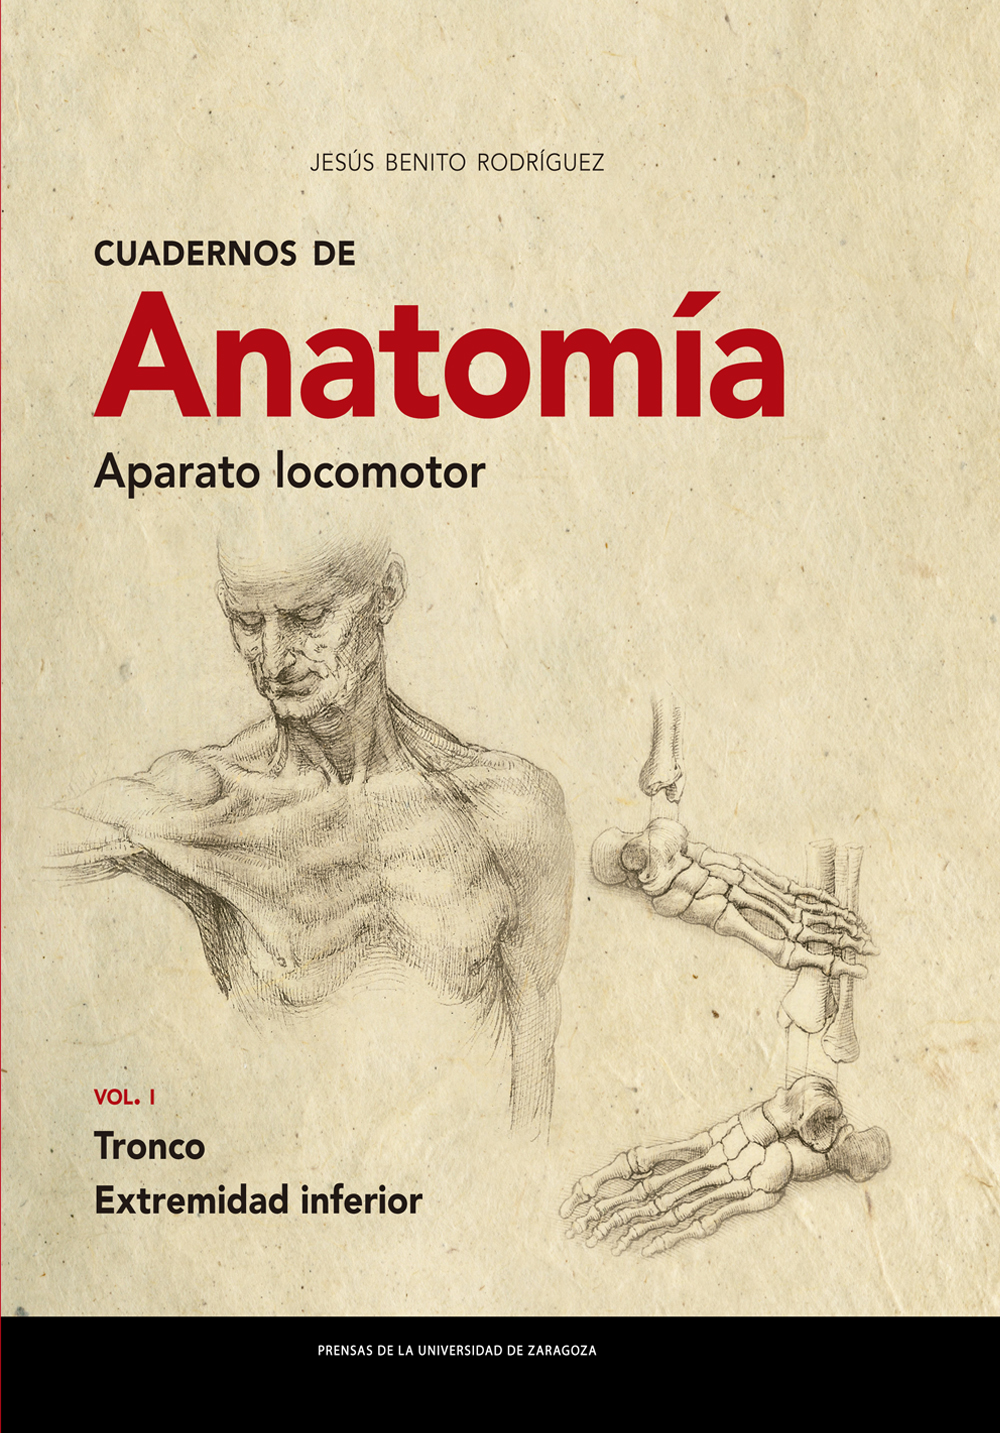 Cuadernos de Anatomía. Aparato locomotor